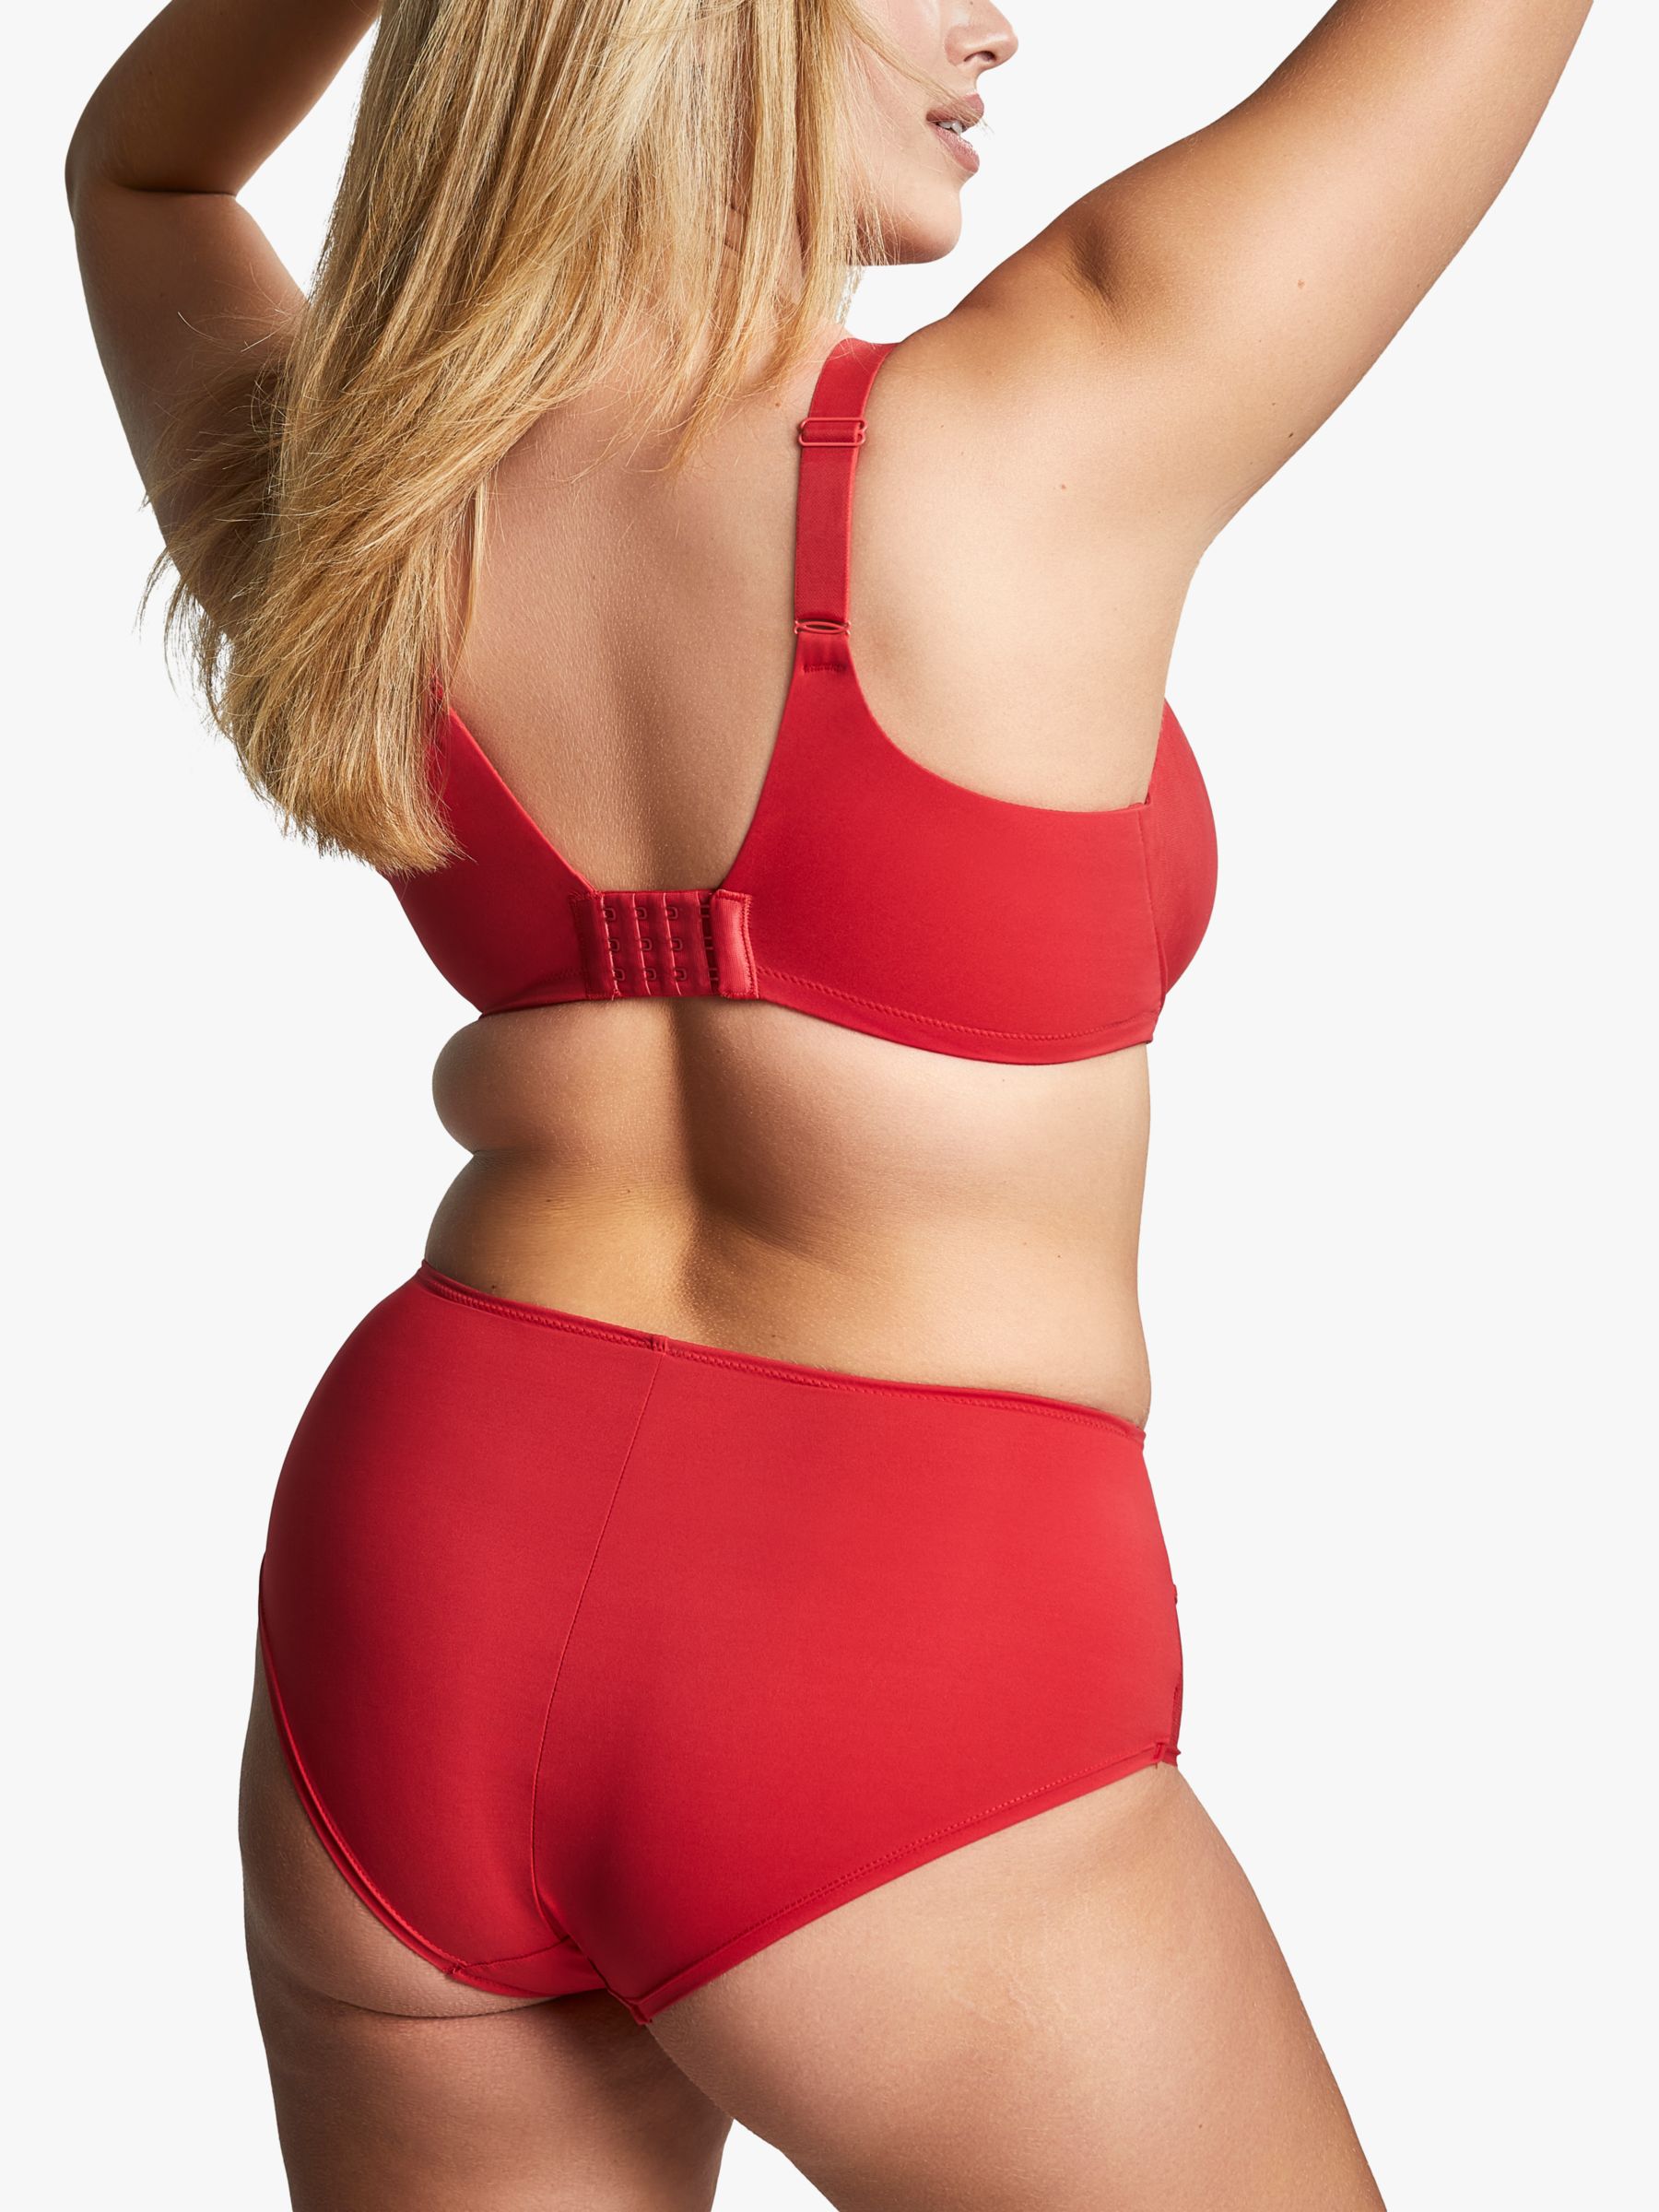 Avenue Body  Women's Plus Size Fashion Balconette Bra - Salsa Red